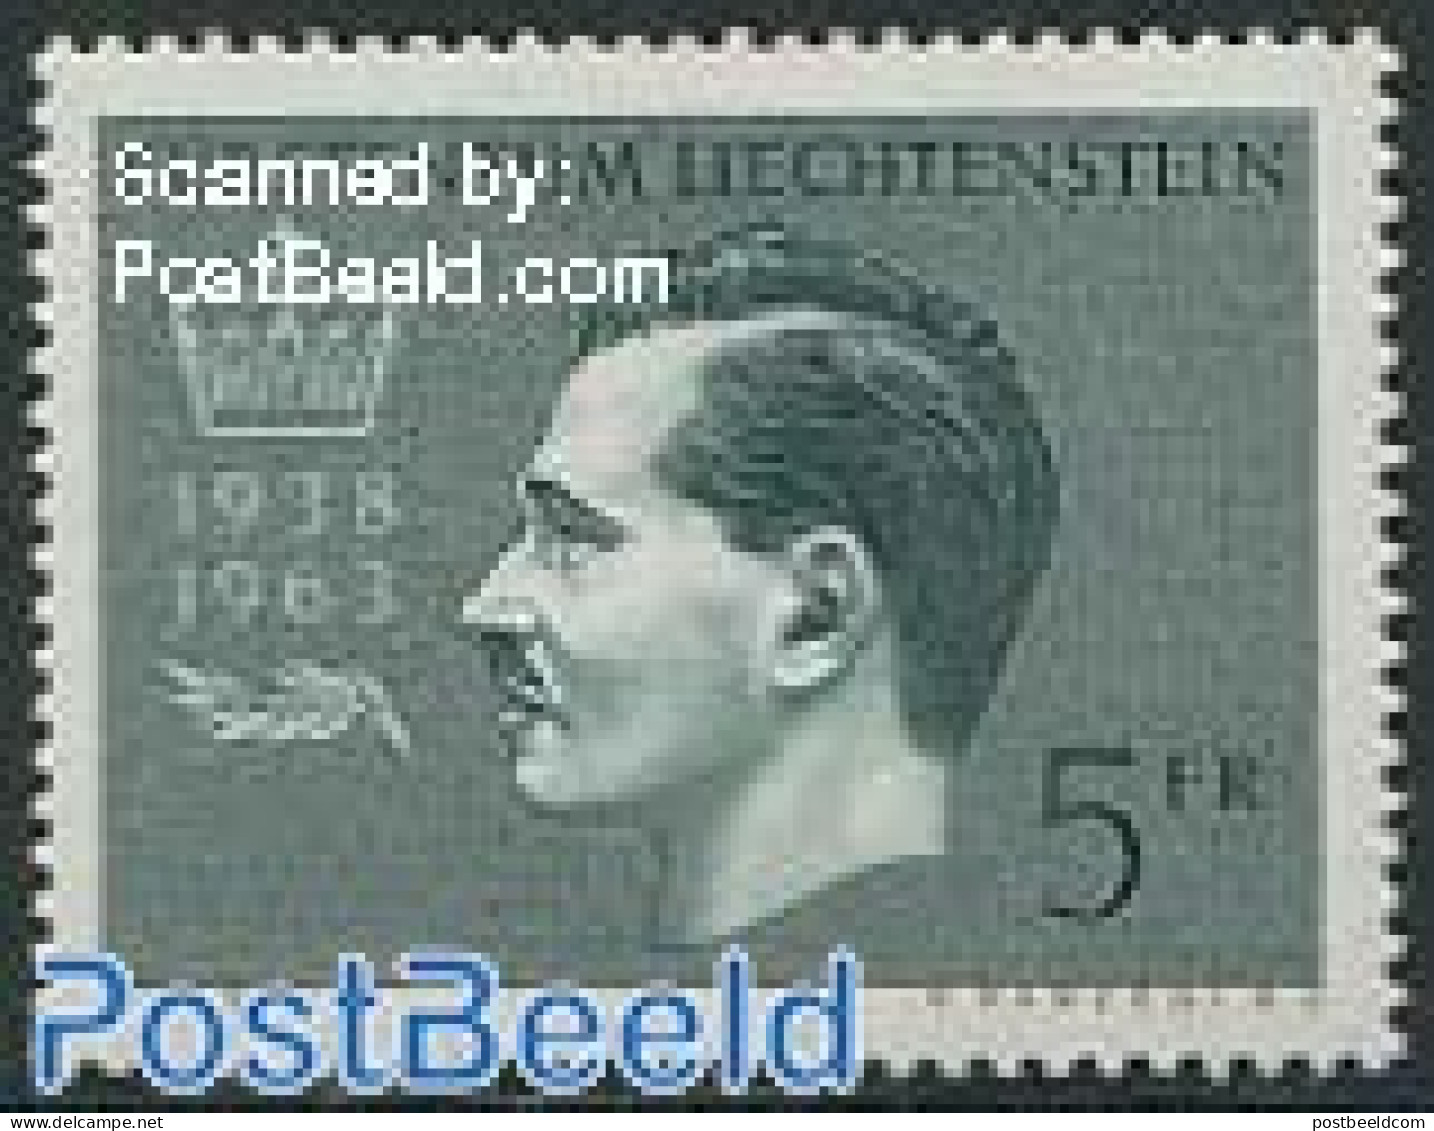 Liechtenstein 1963 Silver Jubilee 1v, Mint NH, History - Kings & Queens (Royalty) - Neufs